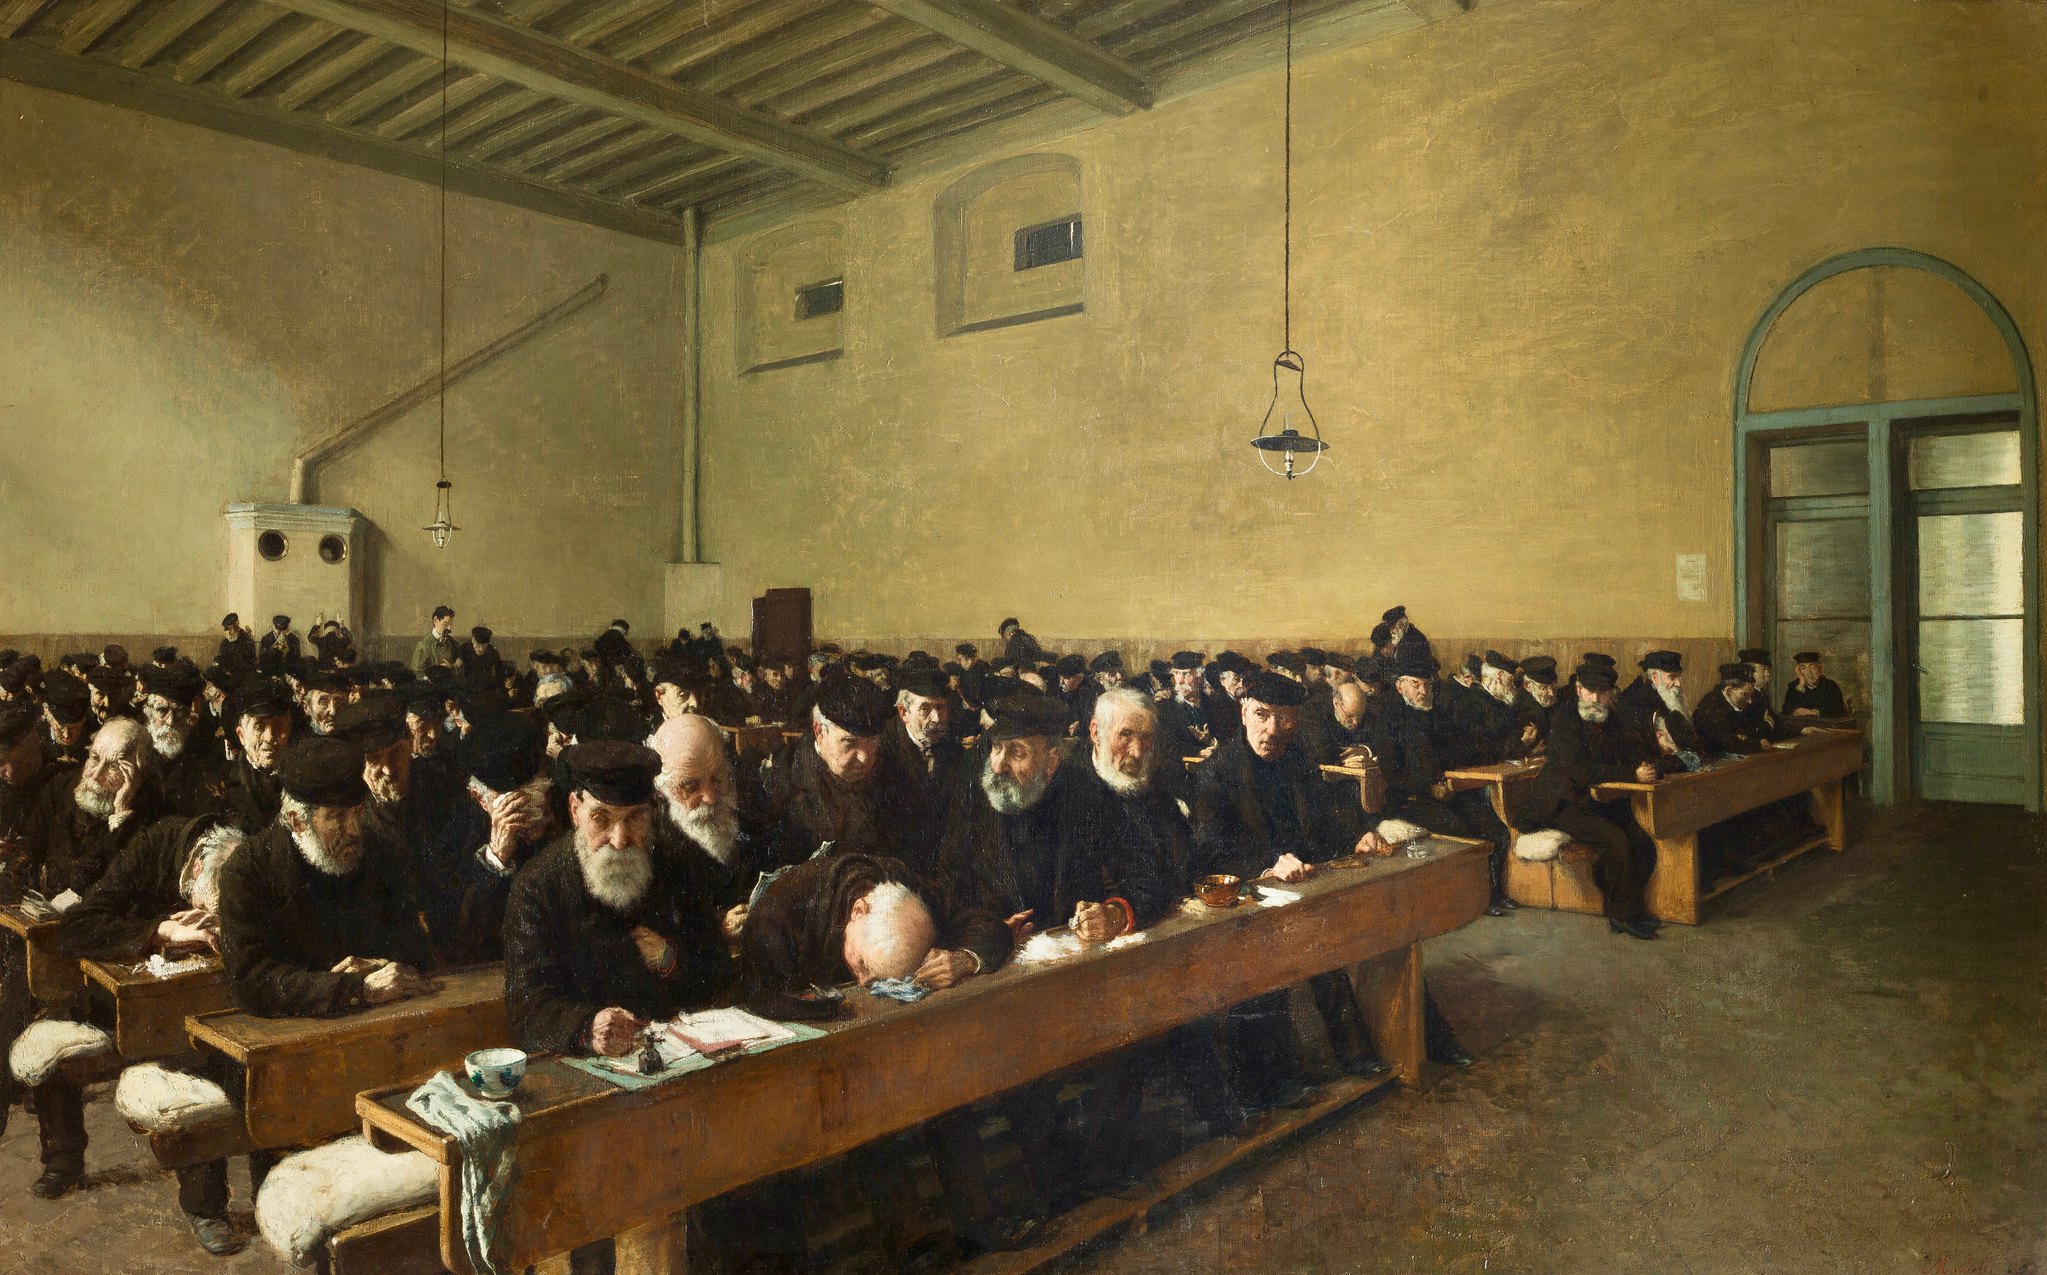 Angelo Morbelli, Giorni… ultimi (1882-1883; olio su tela, 98 x 157,5 cm; Milano, Galleria d’Arte Moderna)
